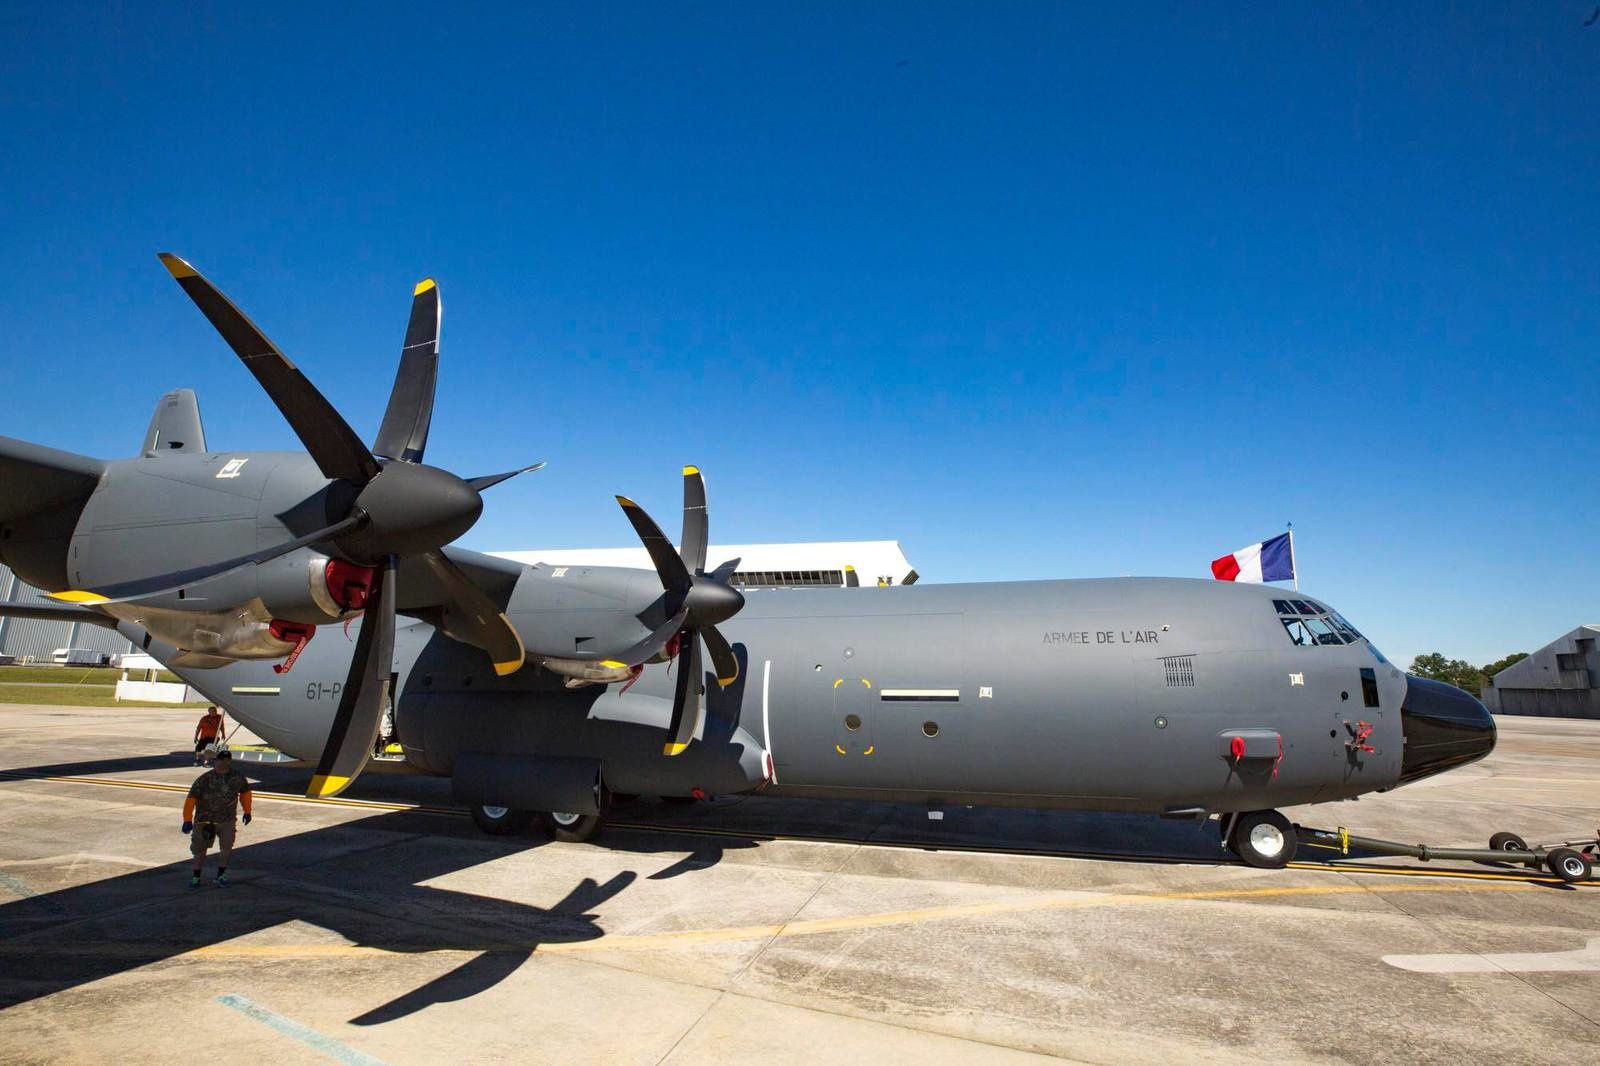  l'Escadron de Transport (ET) 2/61 «Franche-Comté» a annoncé que le premier avion de transport C-130J-30 Super Hercules destiné à l'Armée de l'Air française venait de sortir des chaînes d'assemblage Ob_4697b3_22712573-1680762701968020-804456542935